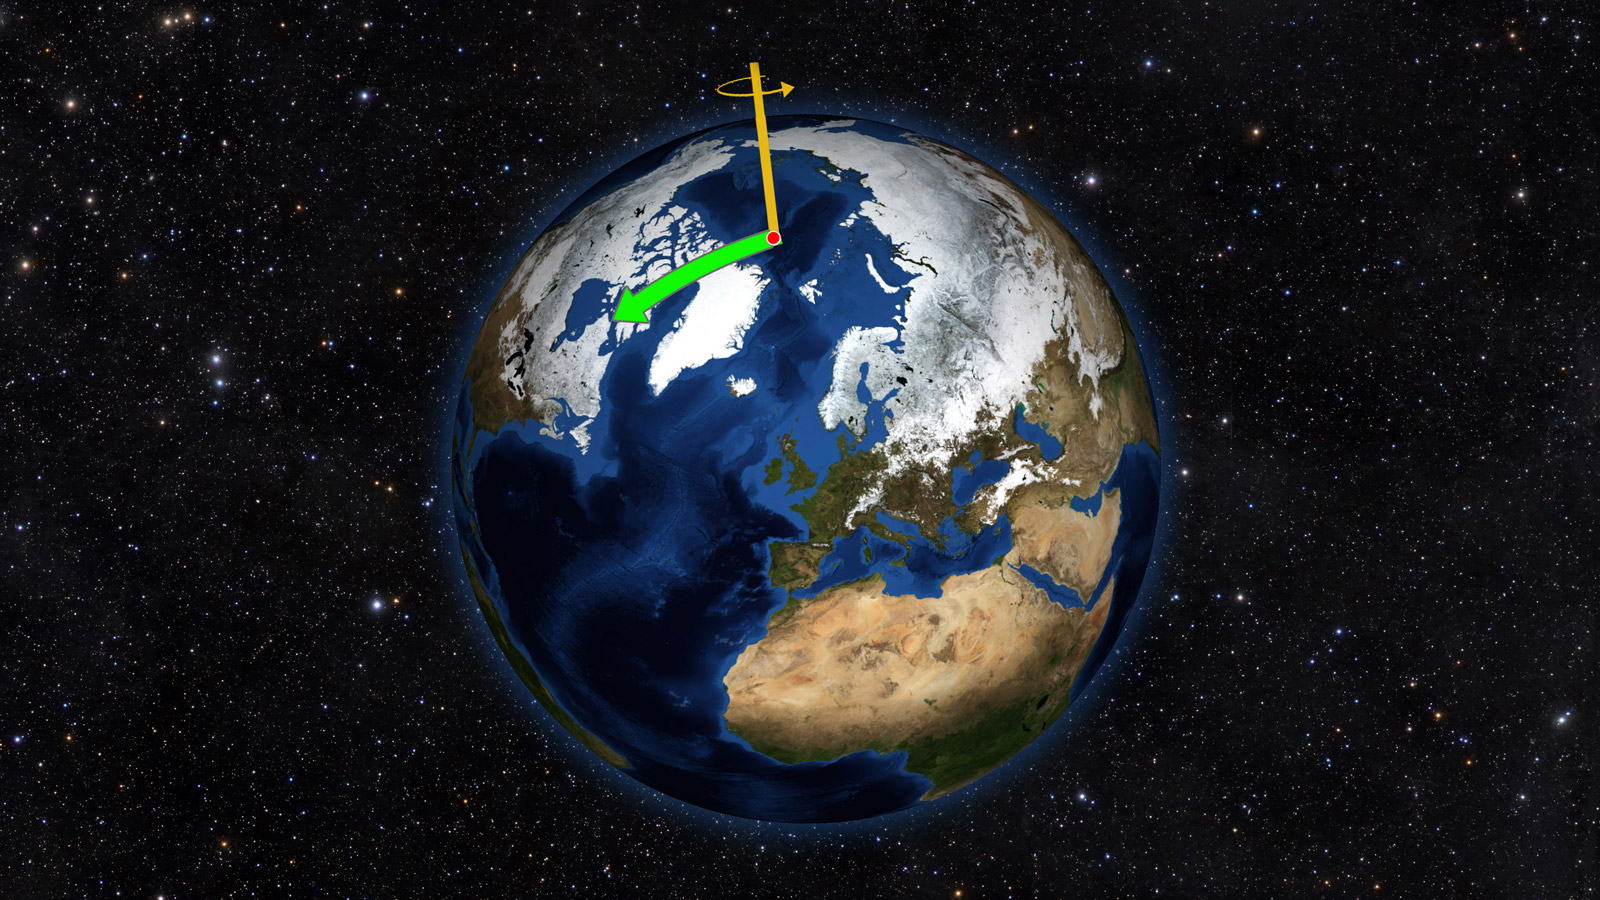 地球的北極點從來都不安份，從1900年開始，北極點已經朝向美國東部方向 (圖中綠色箭頭方向，但尺度是被大大誇張了) 漂移十多公尺。圖│NASA